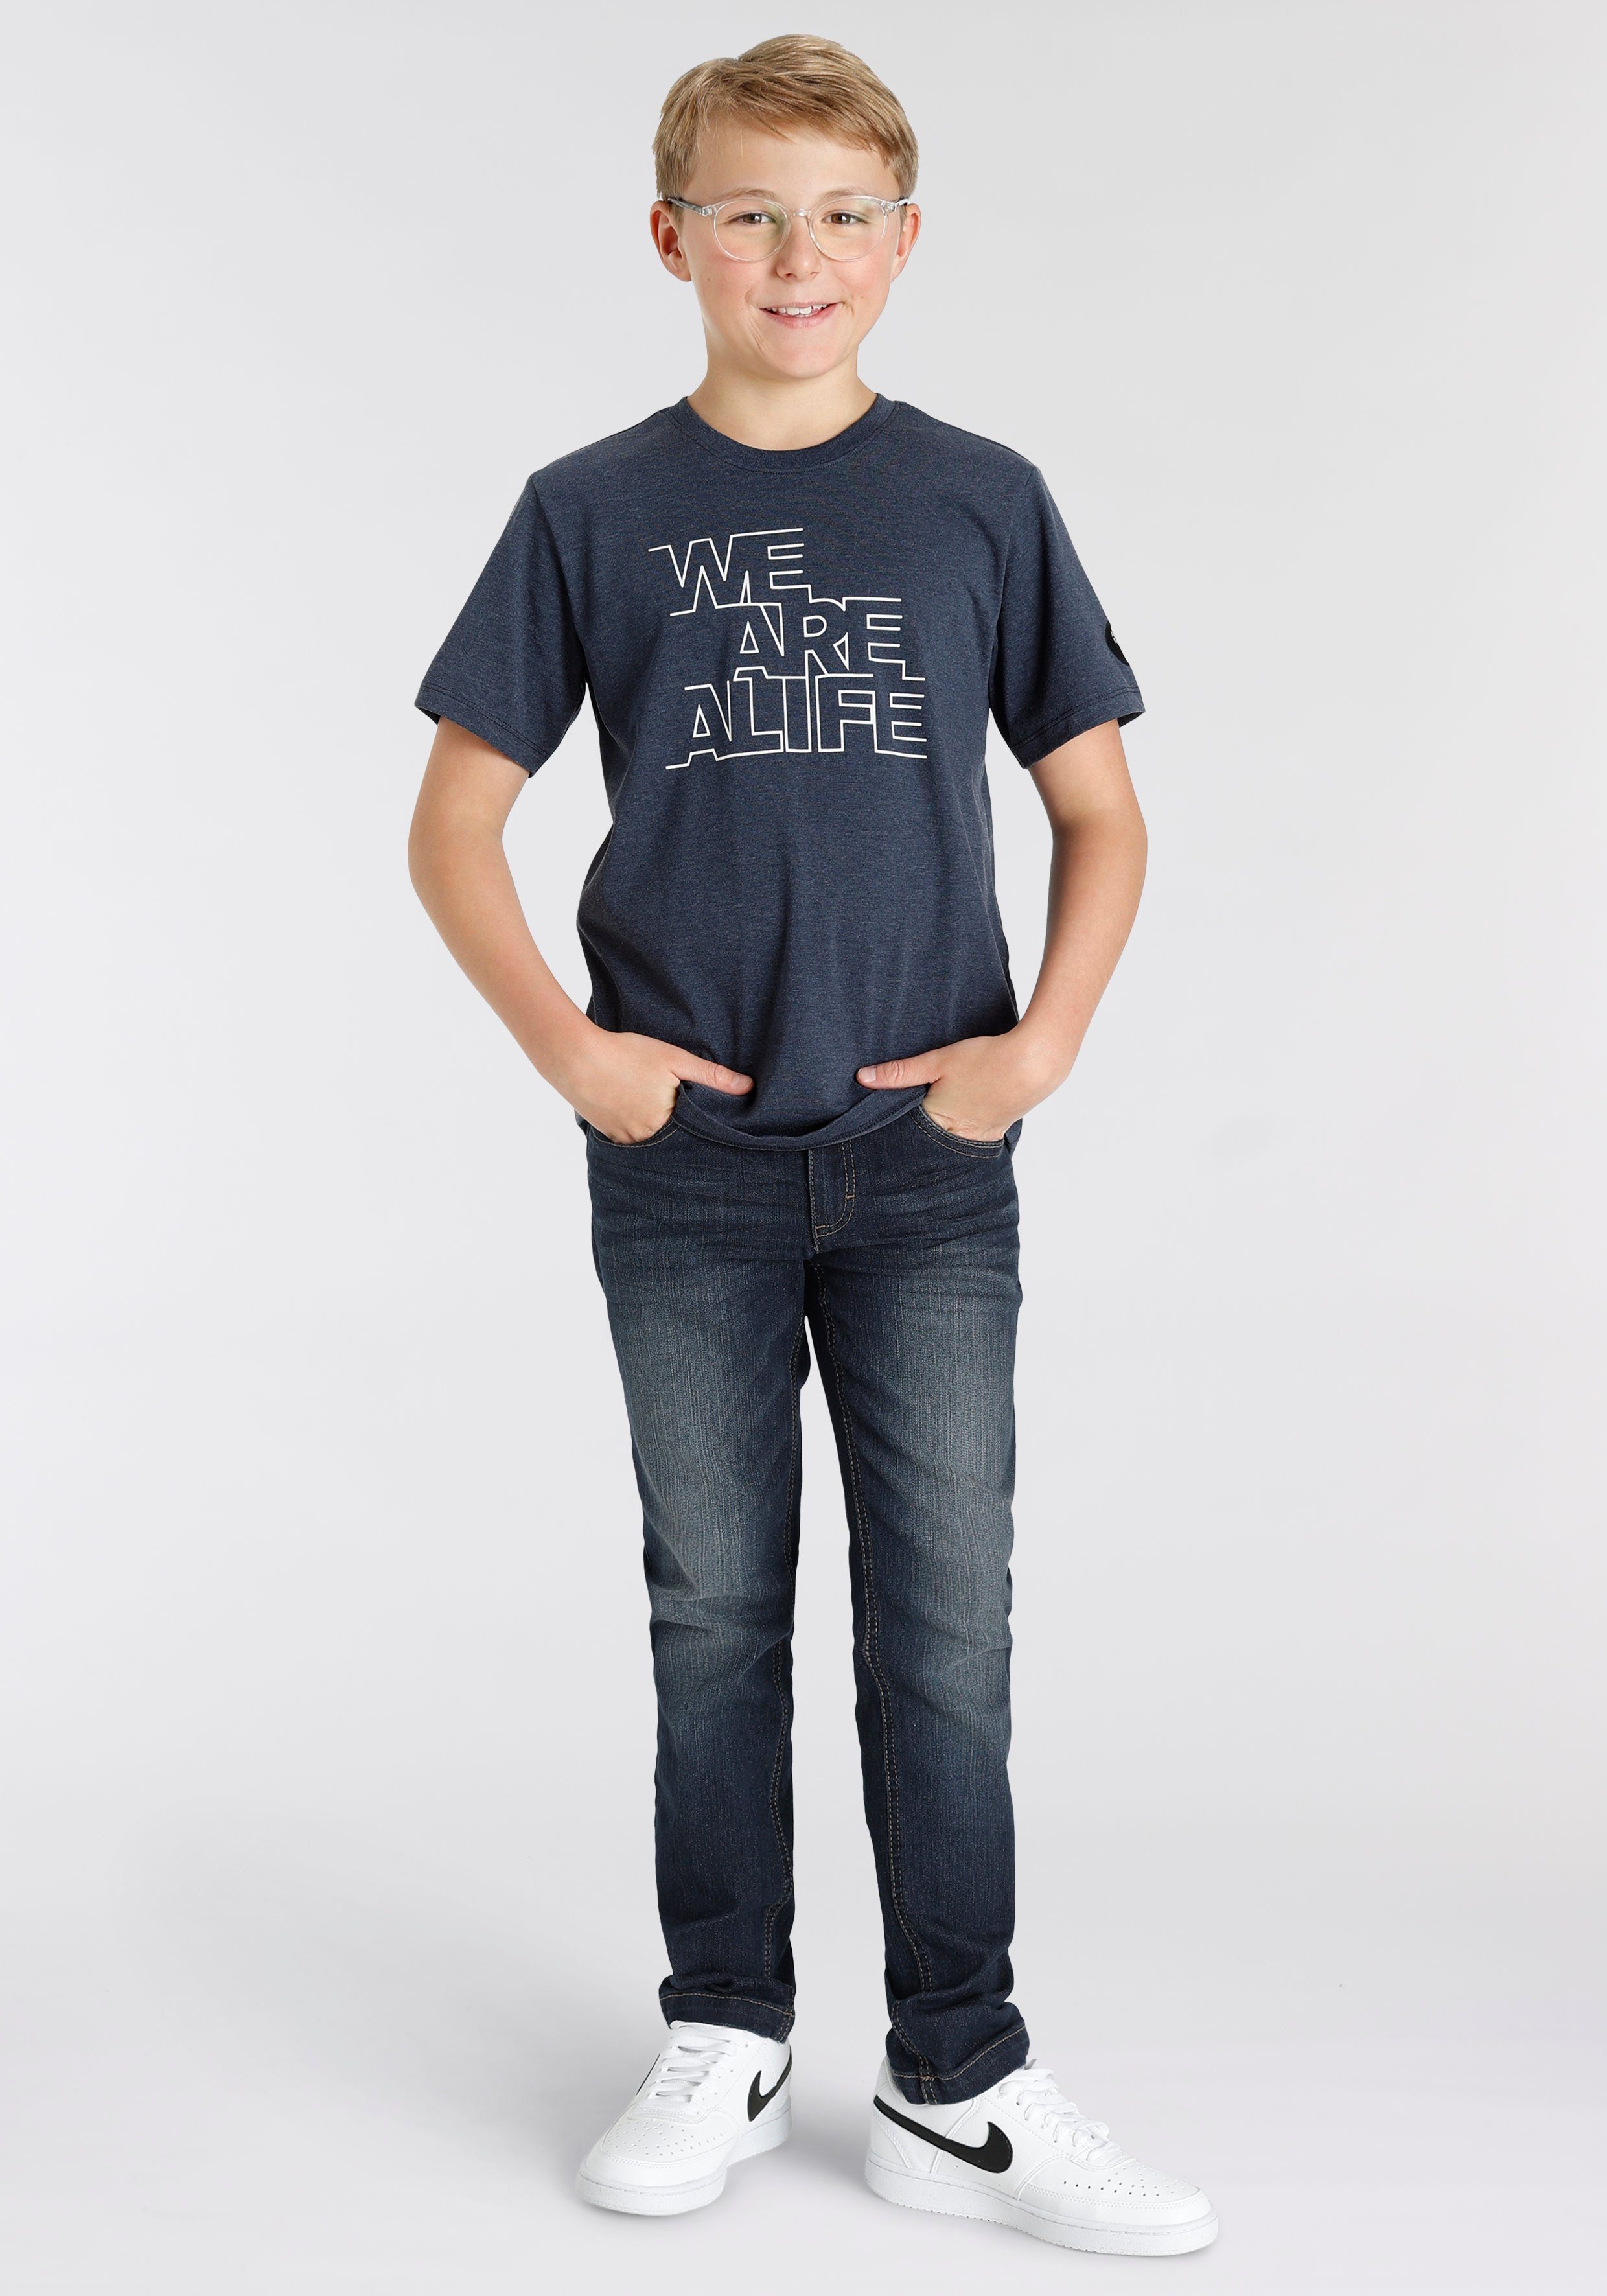 mit schmale Logo-Print Alife im Form für & Kickin Straight-Jeans Hosenbund, Jungen